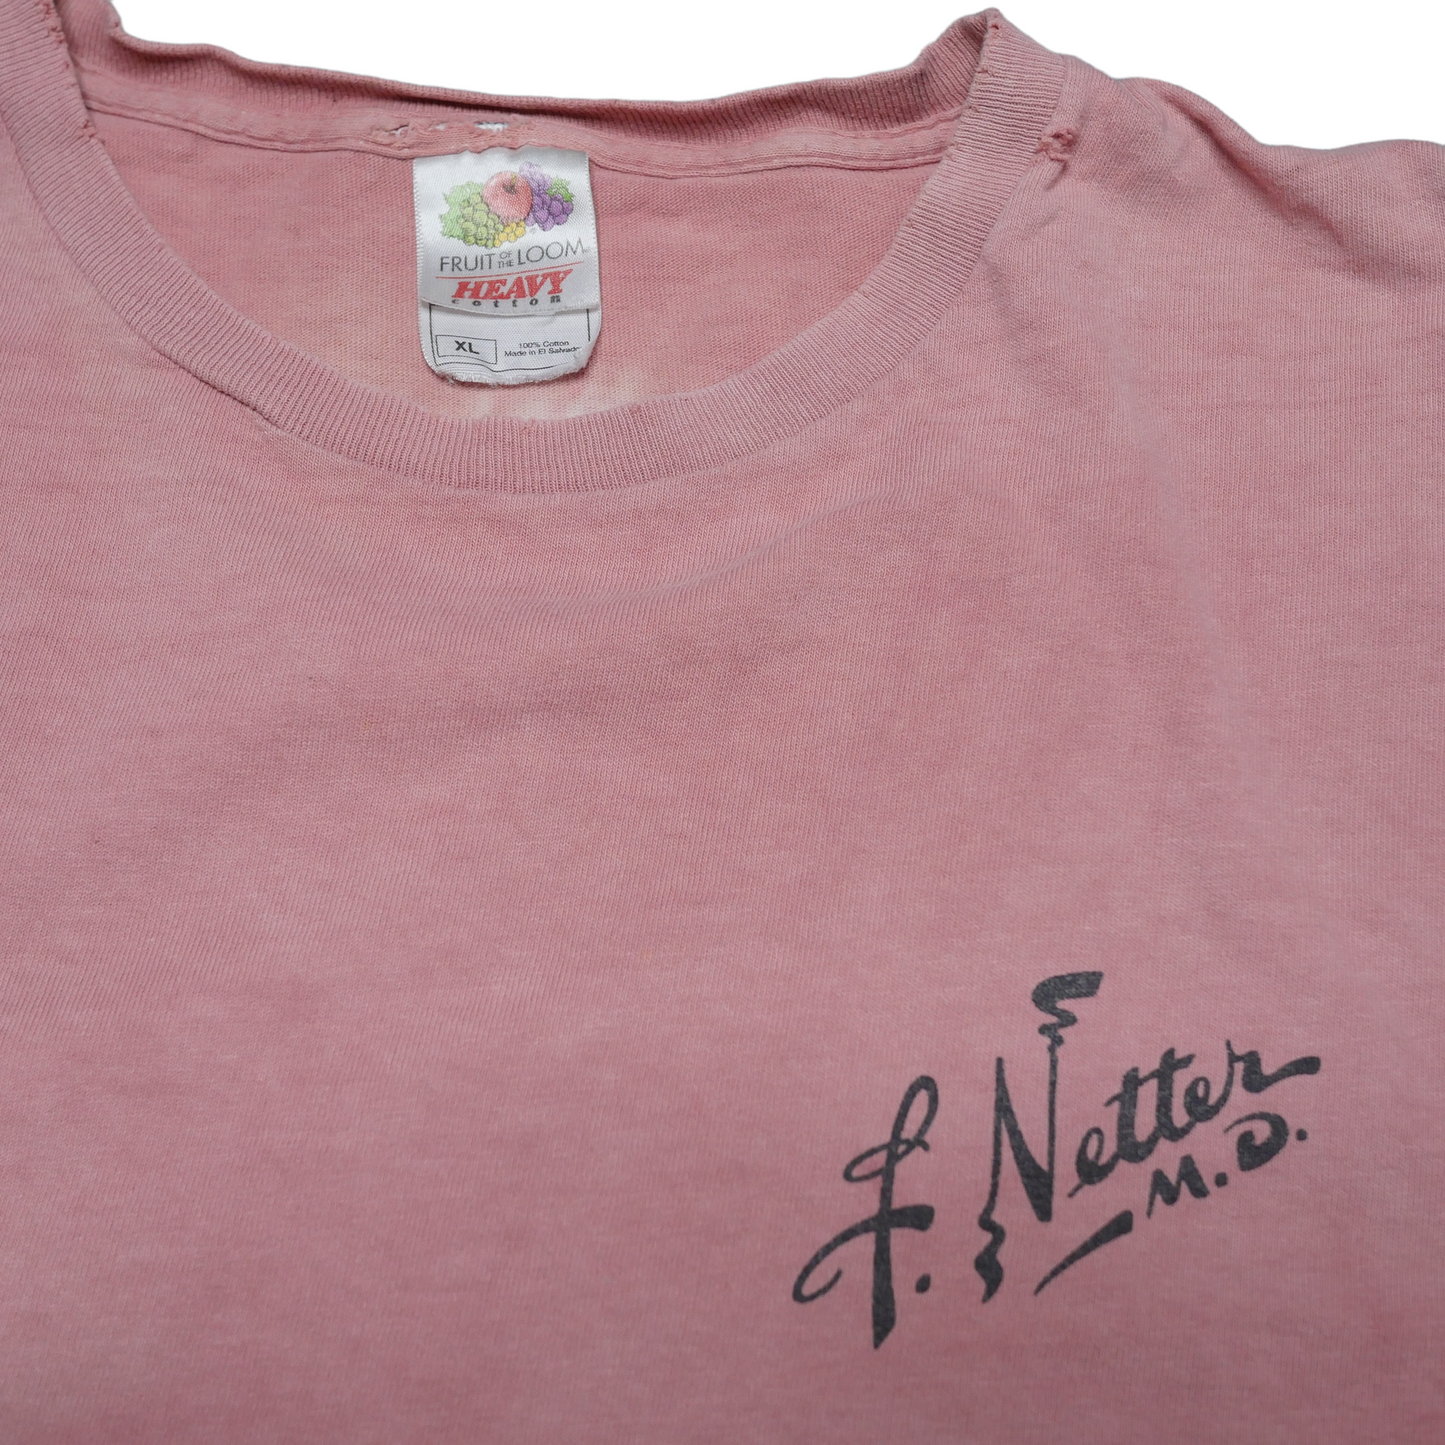 F Netter Art Anatomy Shirt - XL